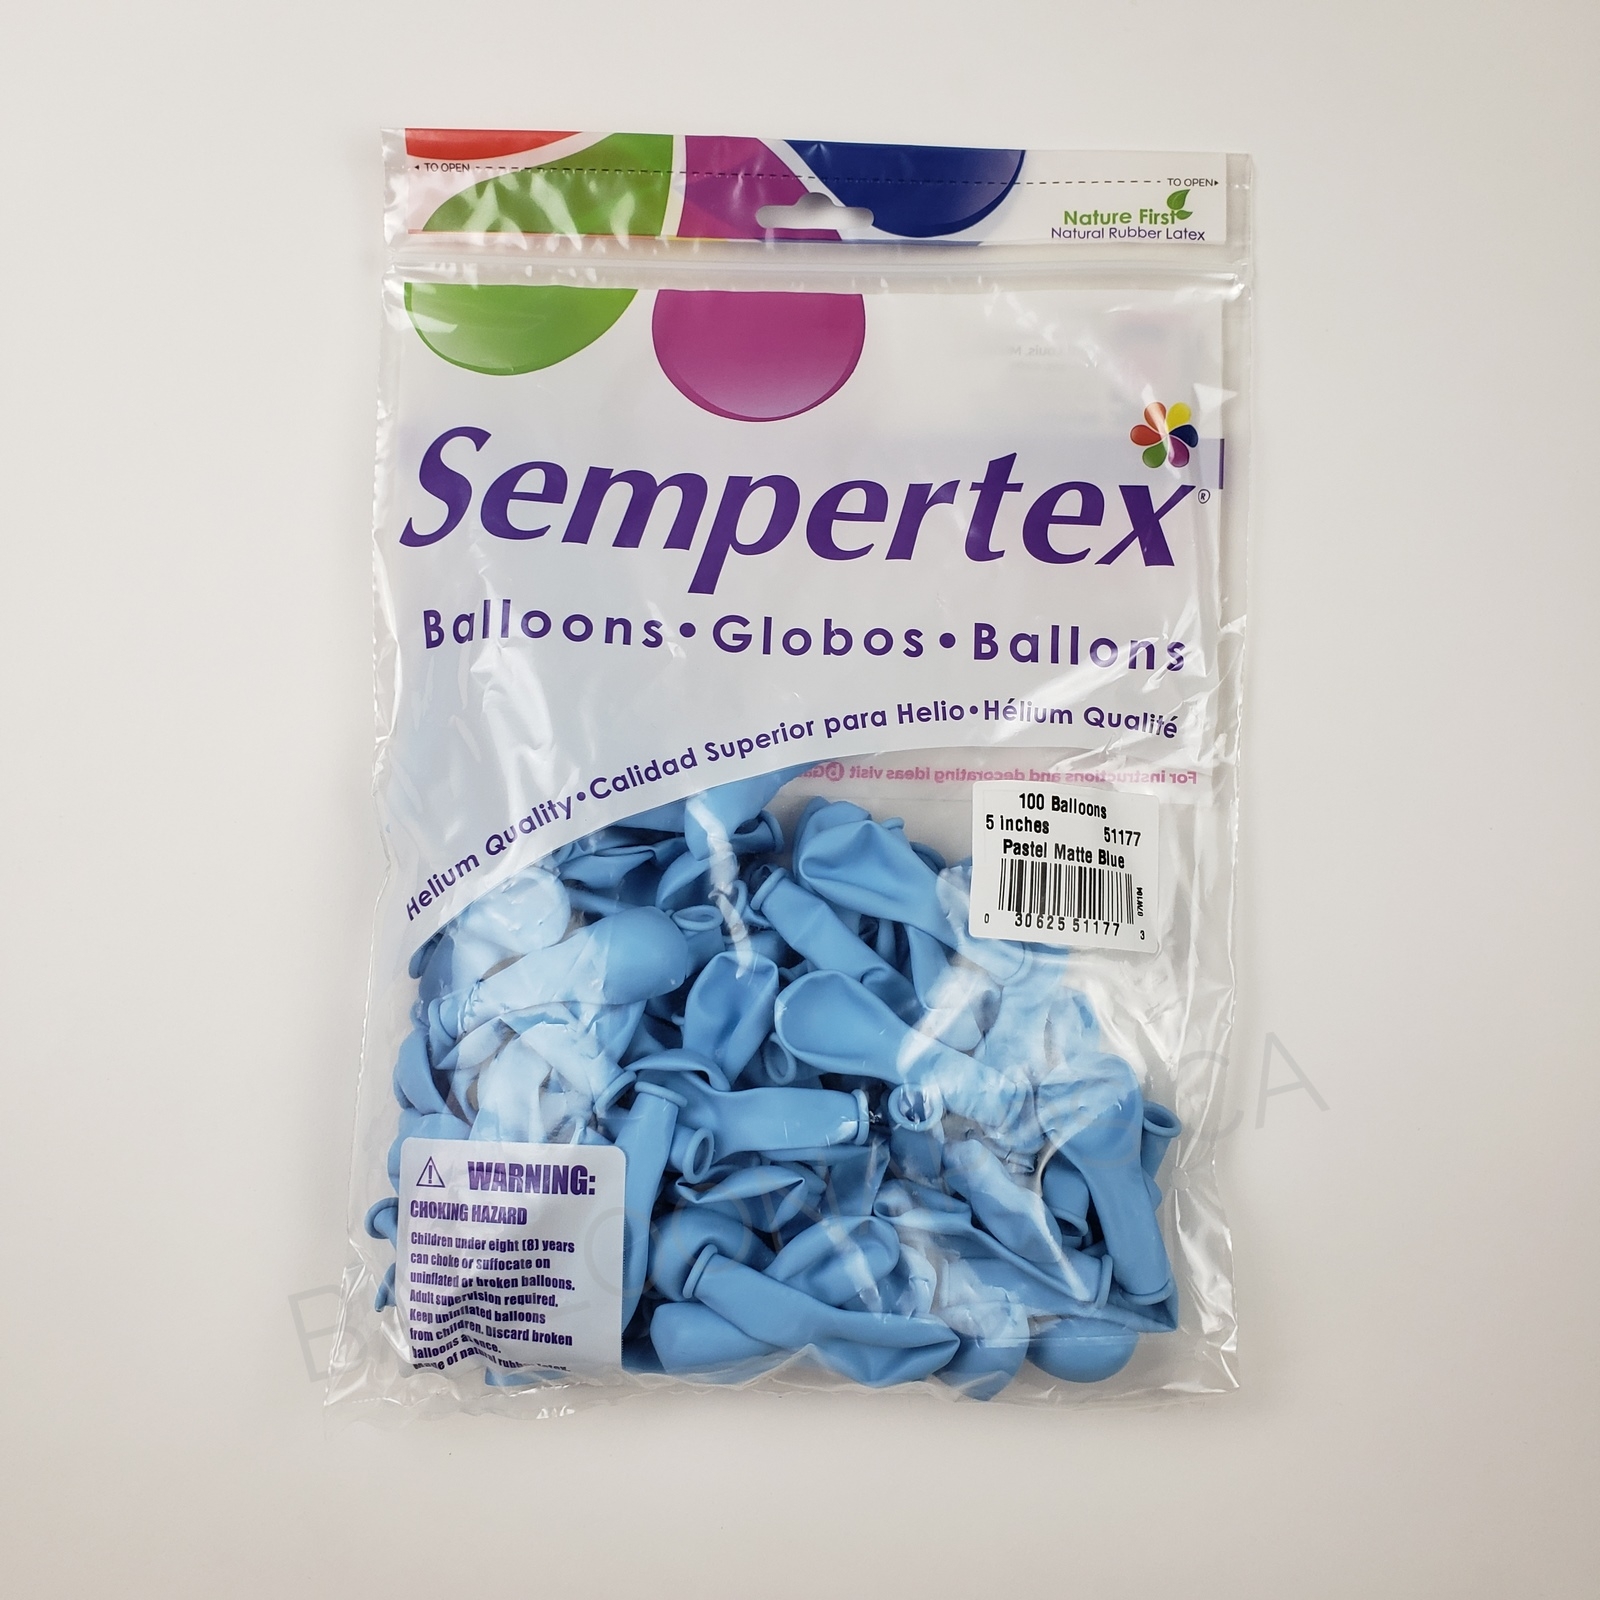 Sempertex 5